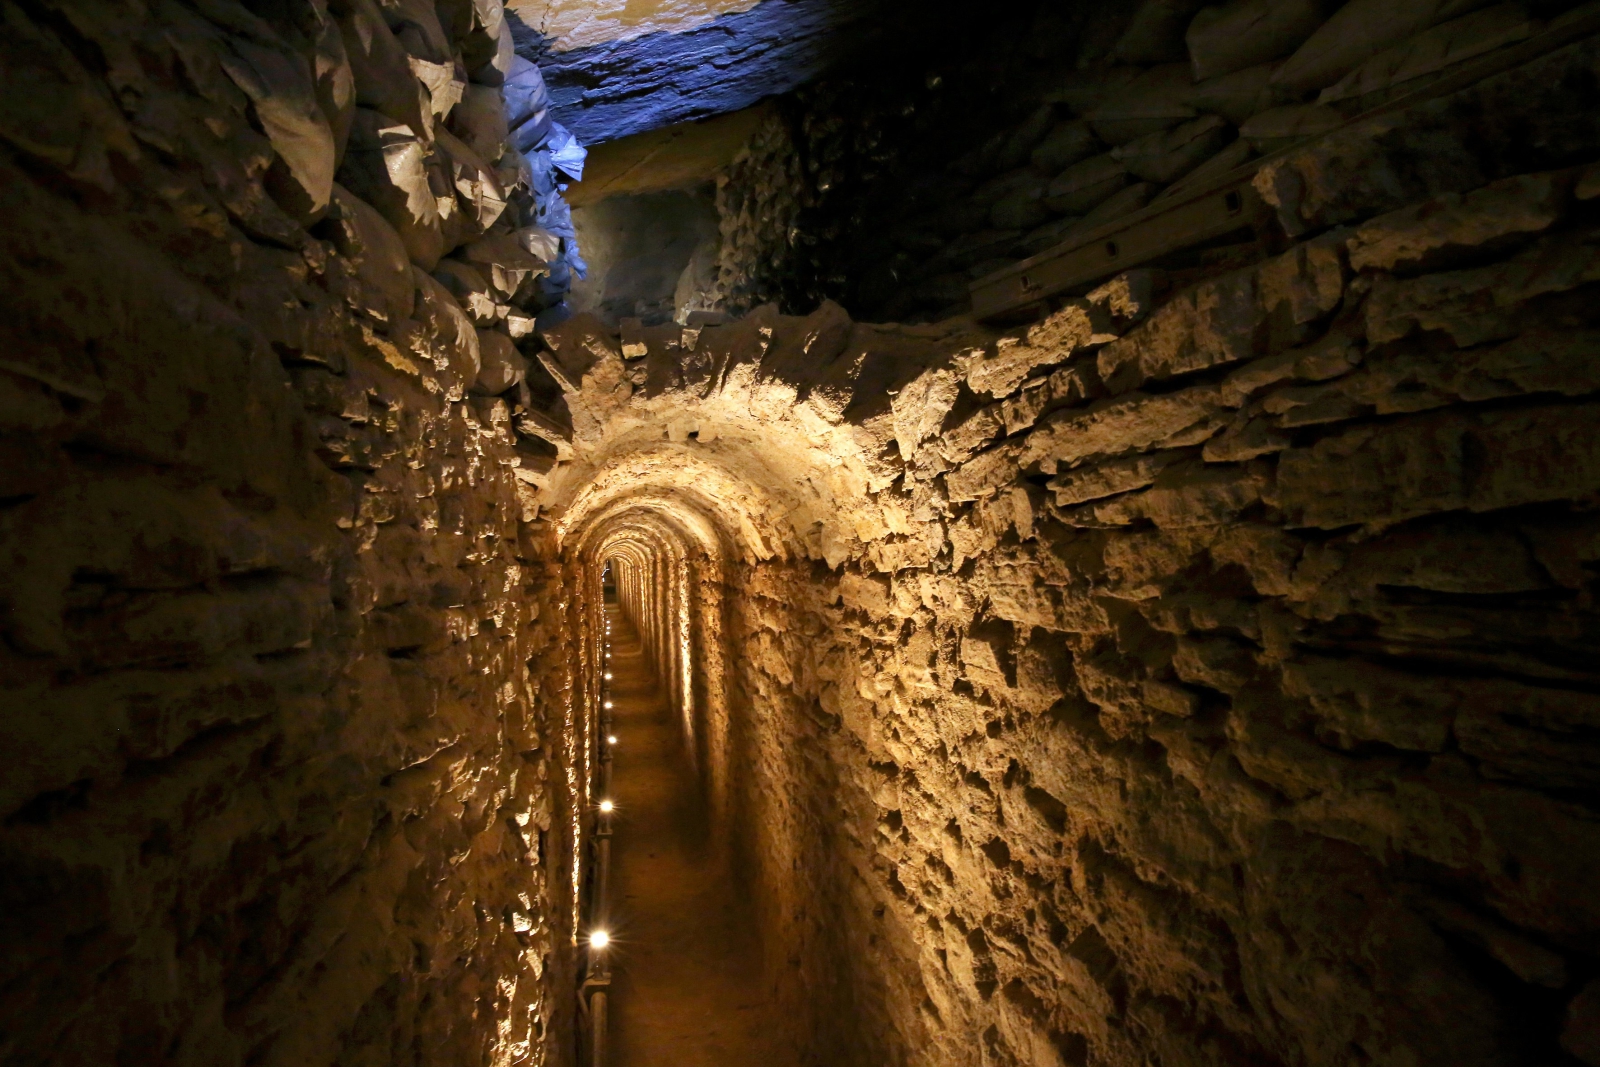 Zdjęcie pokazujące Tunel Eupalinosa, starożytny podziemny akwedukt znajdujący się na wyspie Samon, Grecja.